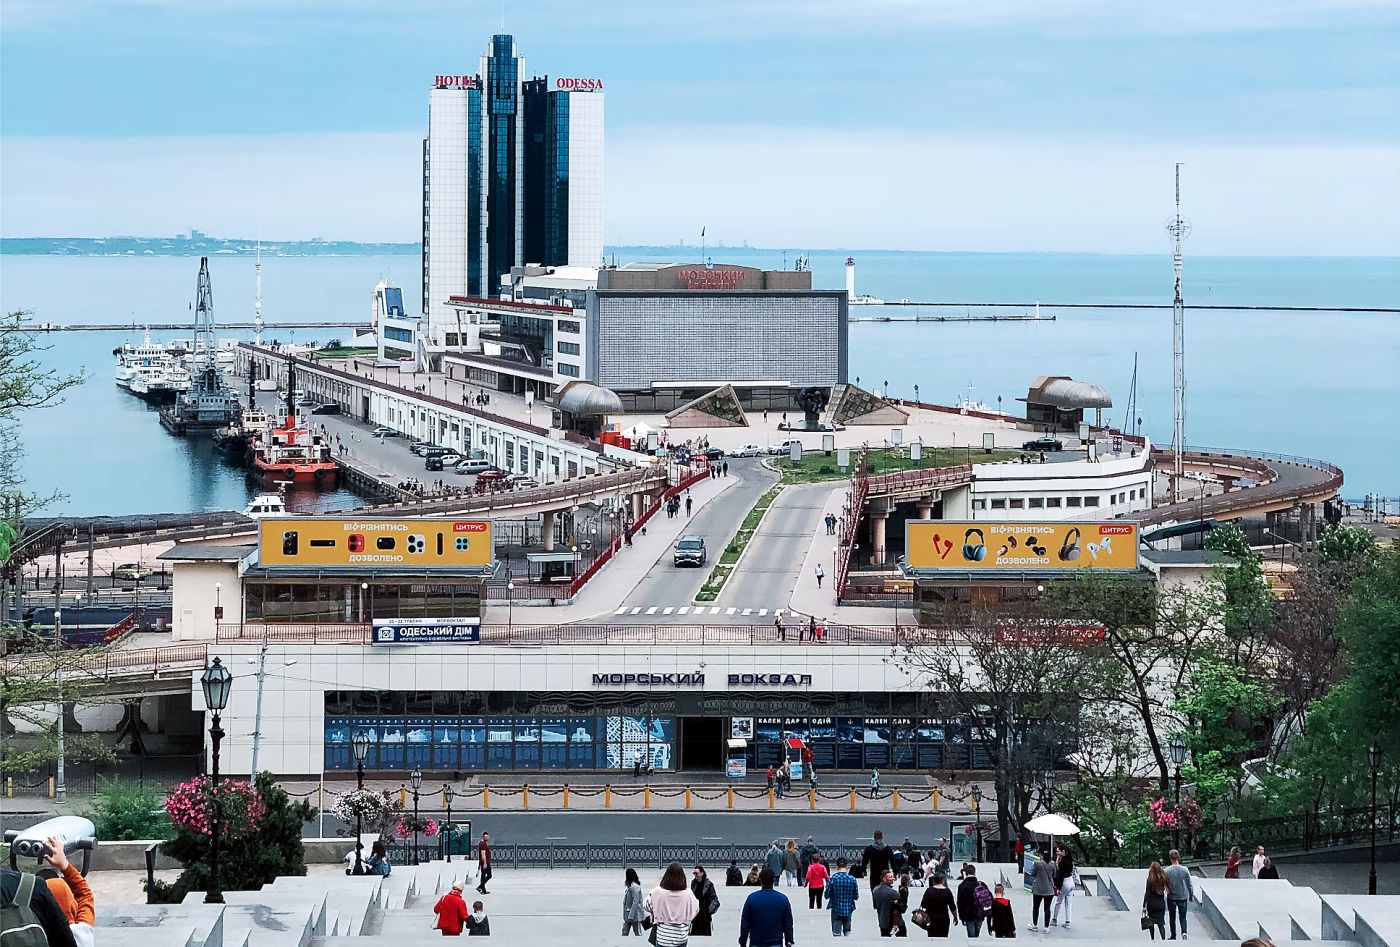 Cảng Odessa huyền thoại - Di sản Thế giới đang gặp nguy hiểm tại Ukraine - Ảnh 5.